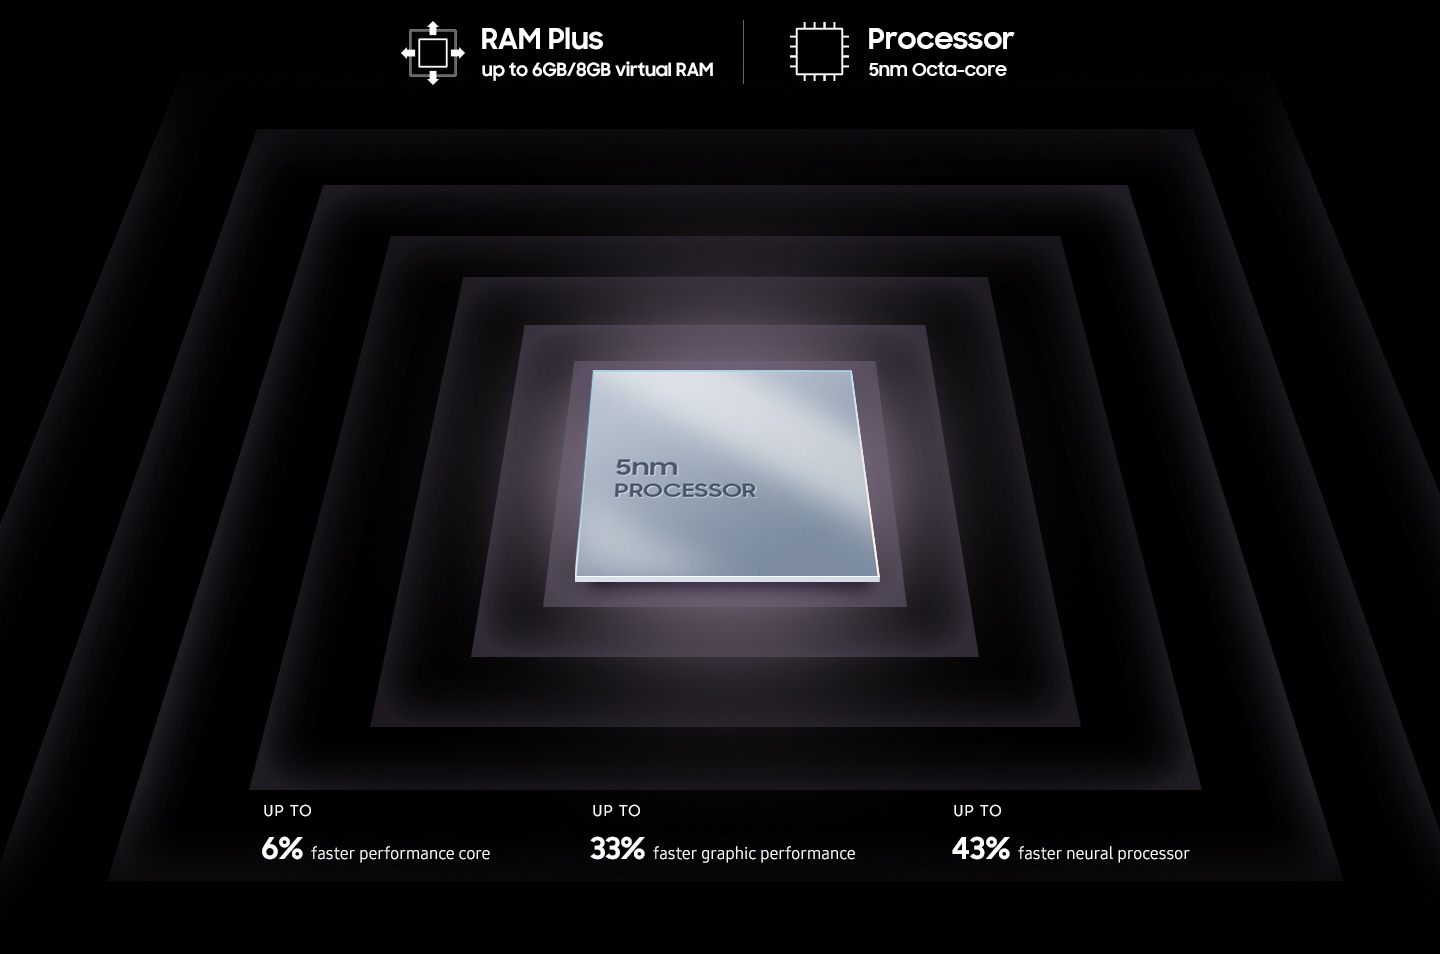 Se muestra un chip de procesador metálico y cuadrado con texto en la superficie que indica un procesador de 5 nm. En torno al chip hay texto en el que se lee RAM Plus de hasta 6 GB/8 GB de RAM virtual, procesador de 5 nm de Octa-core, hasta un 6 % más rápido de rendimiento de núcleo, hasta un 33 % más rápido de rendimiento gráfico, hasta un 43 % más rápido de procesador neural. 